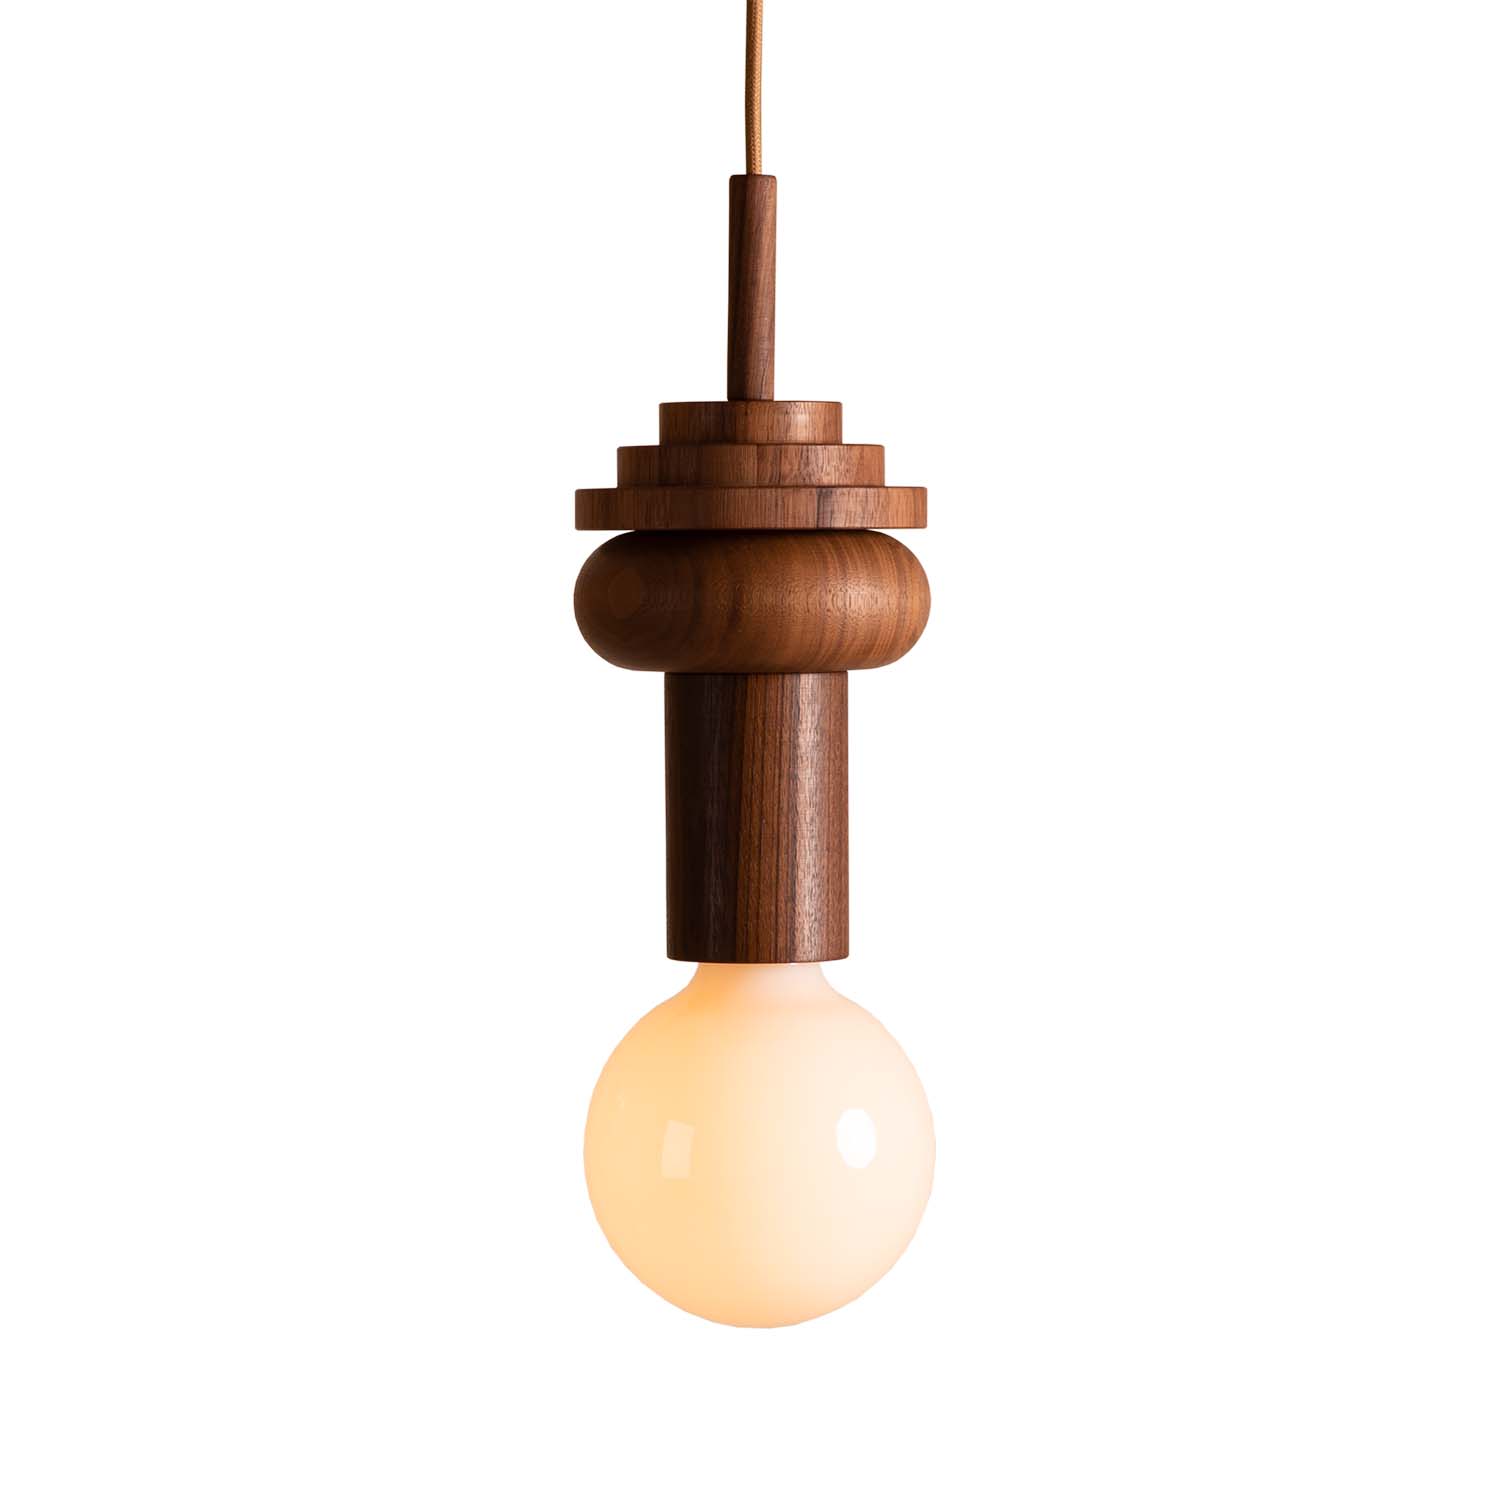 JUNIT WALNUT - Ball-shaped pendant light in walnut wood